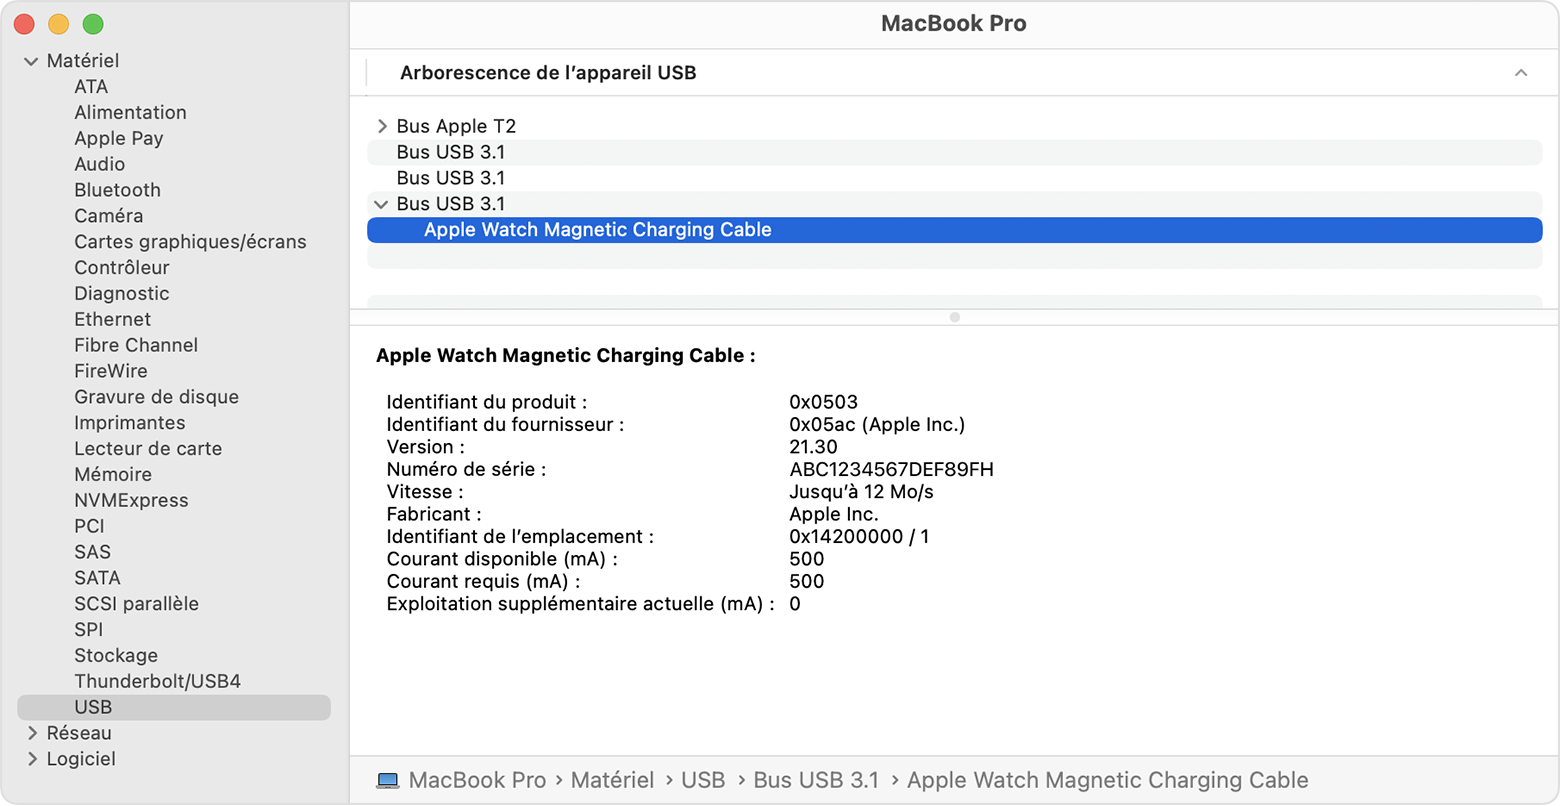 Rapport système de MacBook Pro affichant les informations concernant le fabricant du câble de recharge magnétique pour Apple Watch